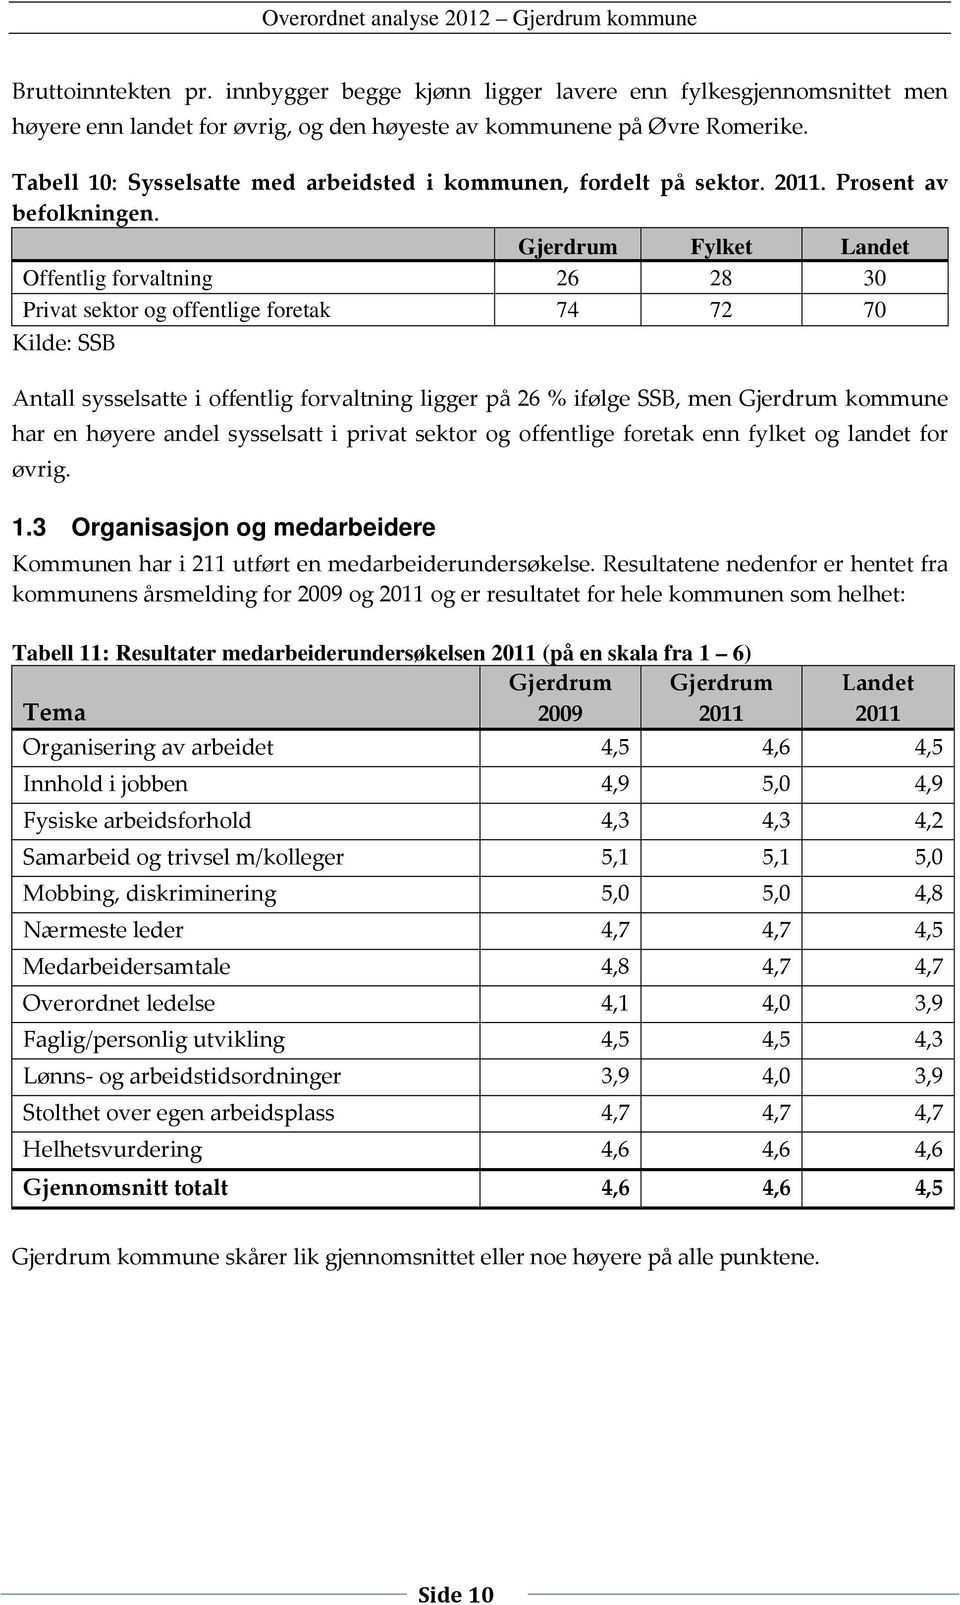 Gjerdrum Fylket Landet Offentlig forvaltning 26 28 30 Privat sektor og offentlige foretak 74 72 70 Kilde: SSB Antall sysselsatte i offentlig forvaltning ligger på 26 % ifølge SSB, men Gjerdrum